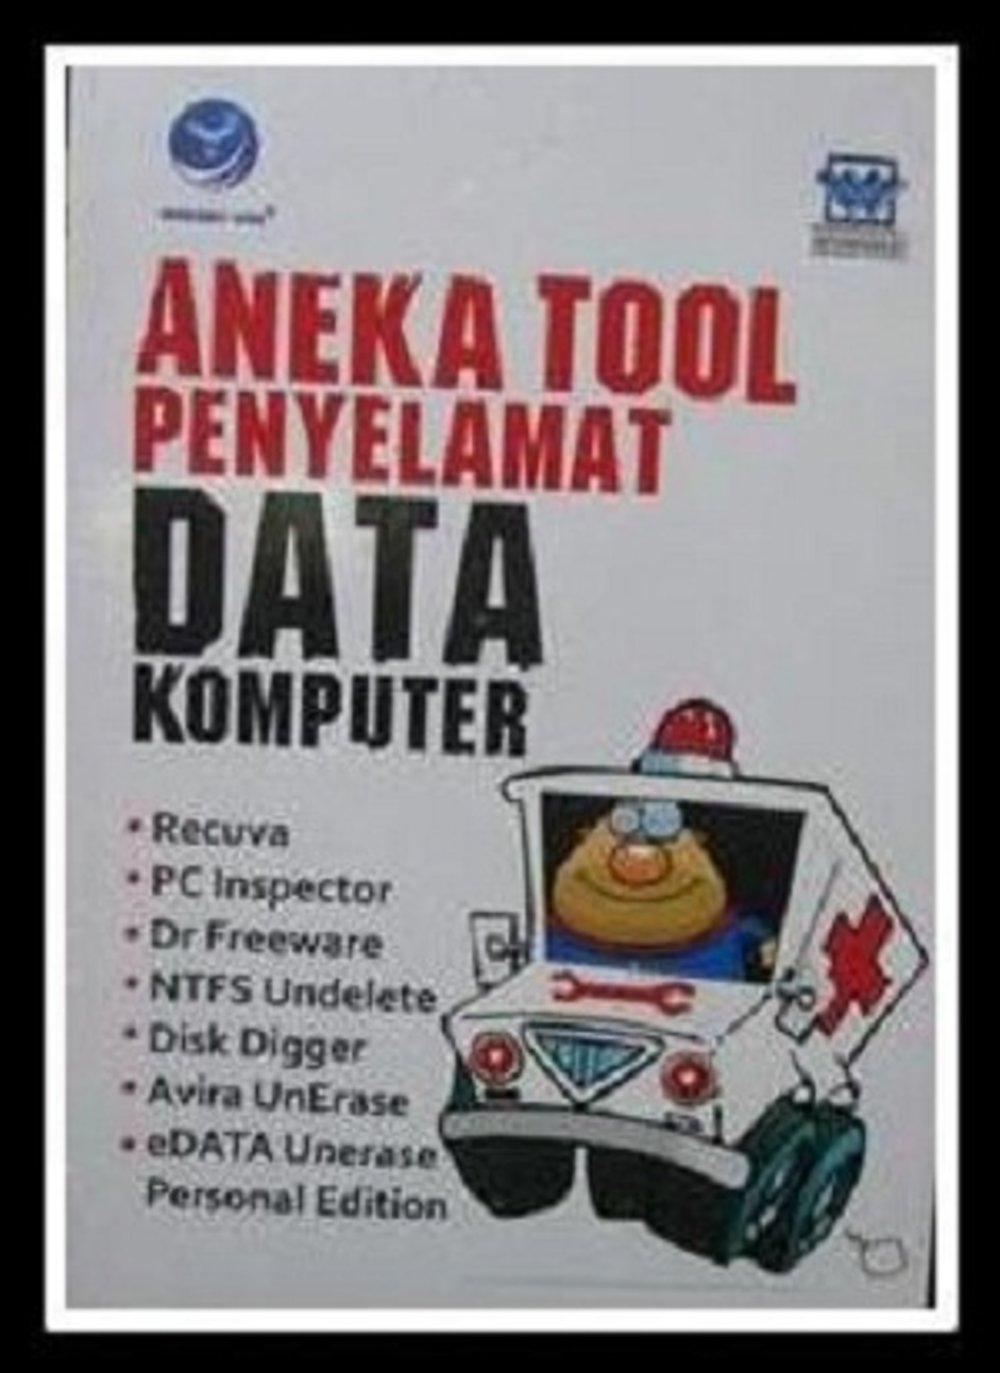 Aneka tool penyelamat data komputer